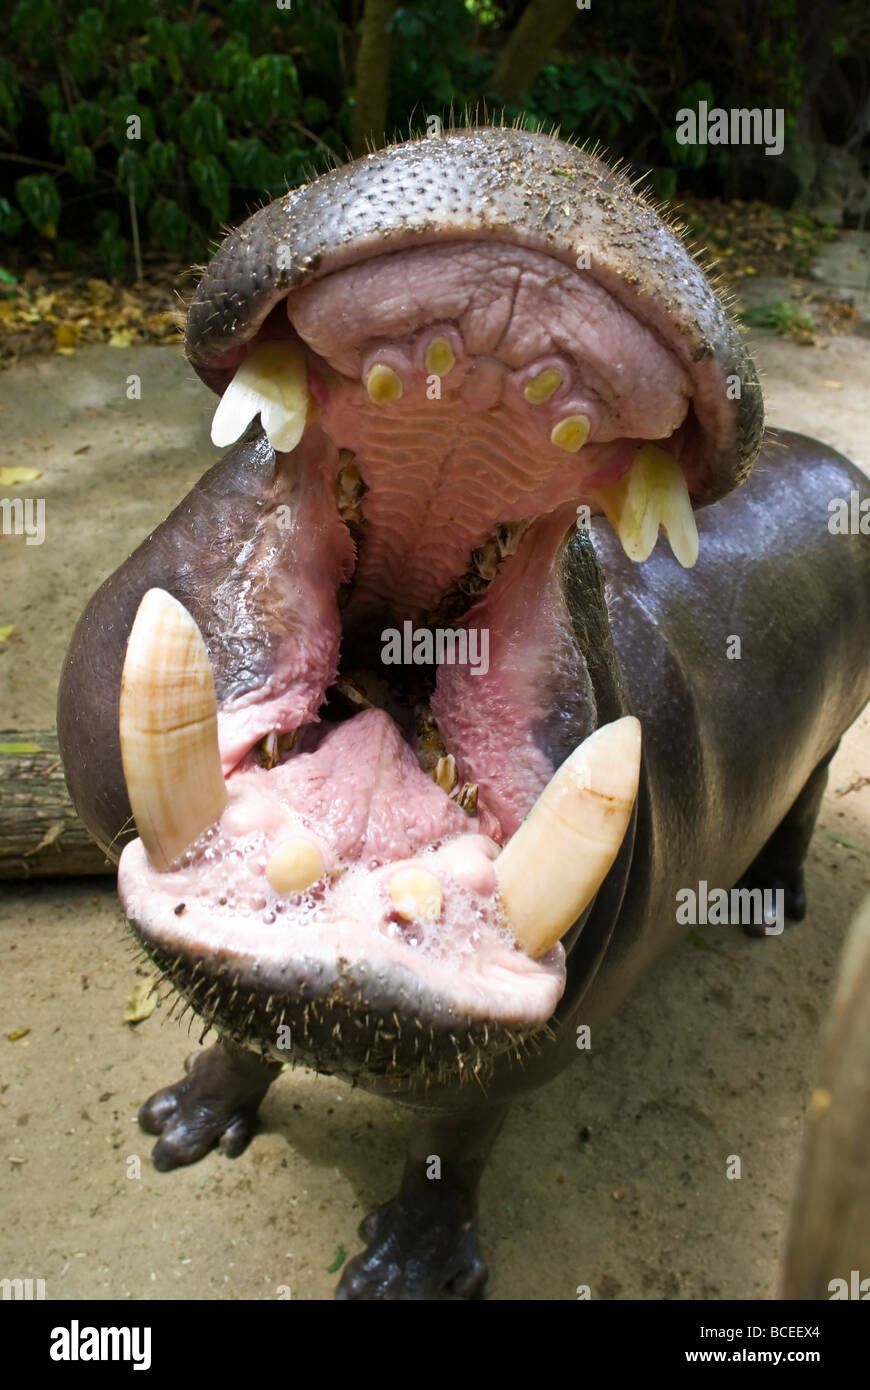 A Pygmy Hippopotamus, Choeropsis liberiensis, opens its massive jaws. Stock Photo